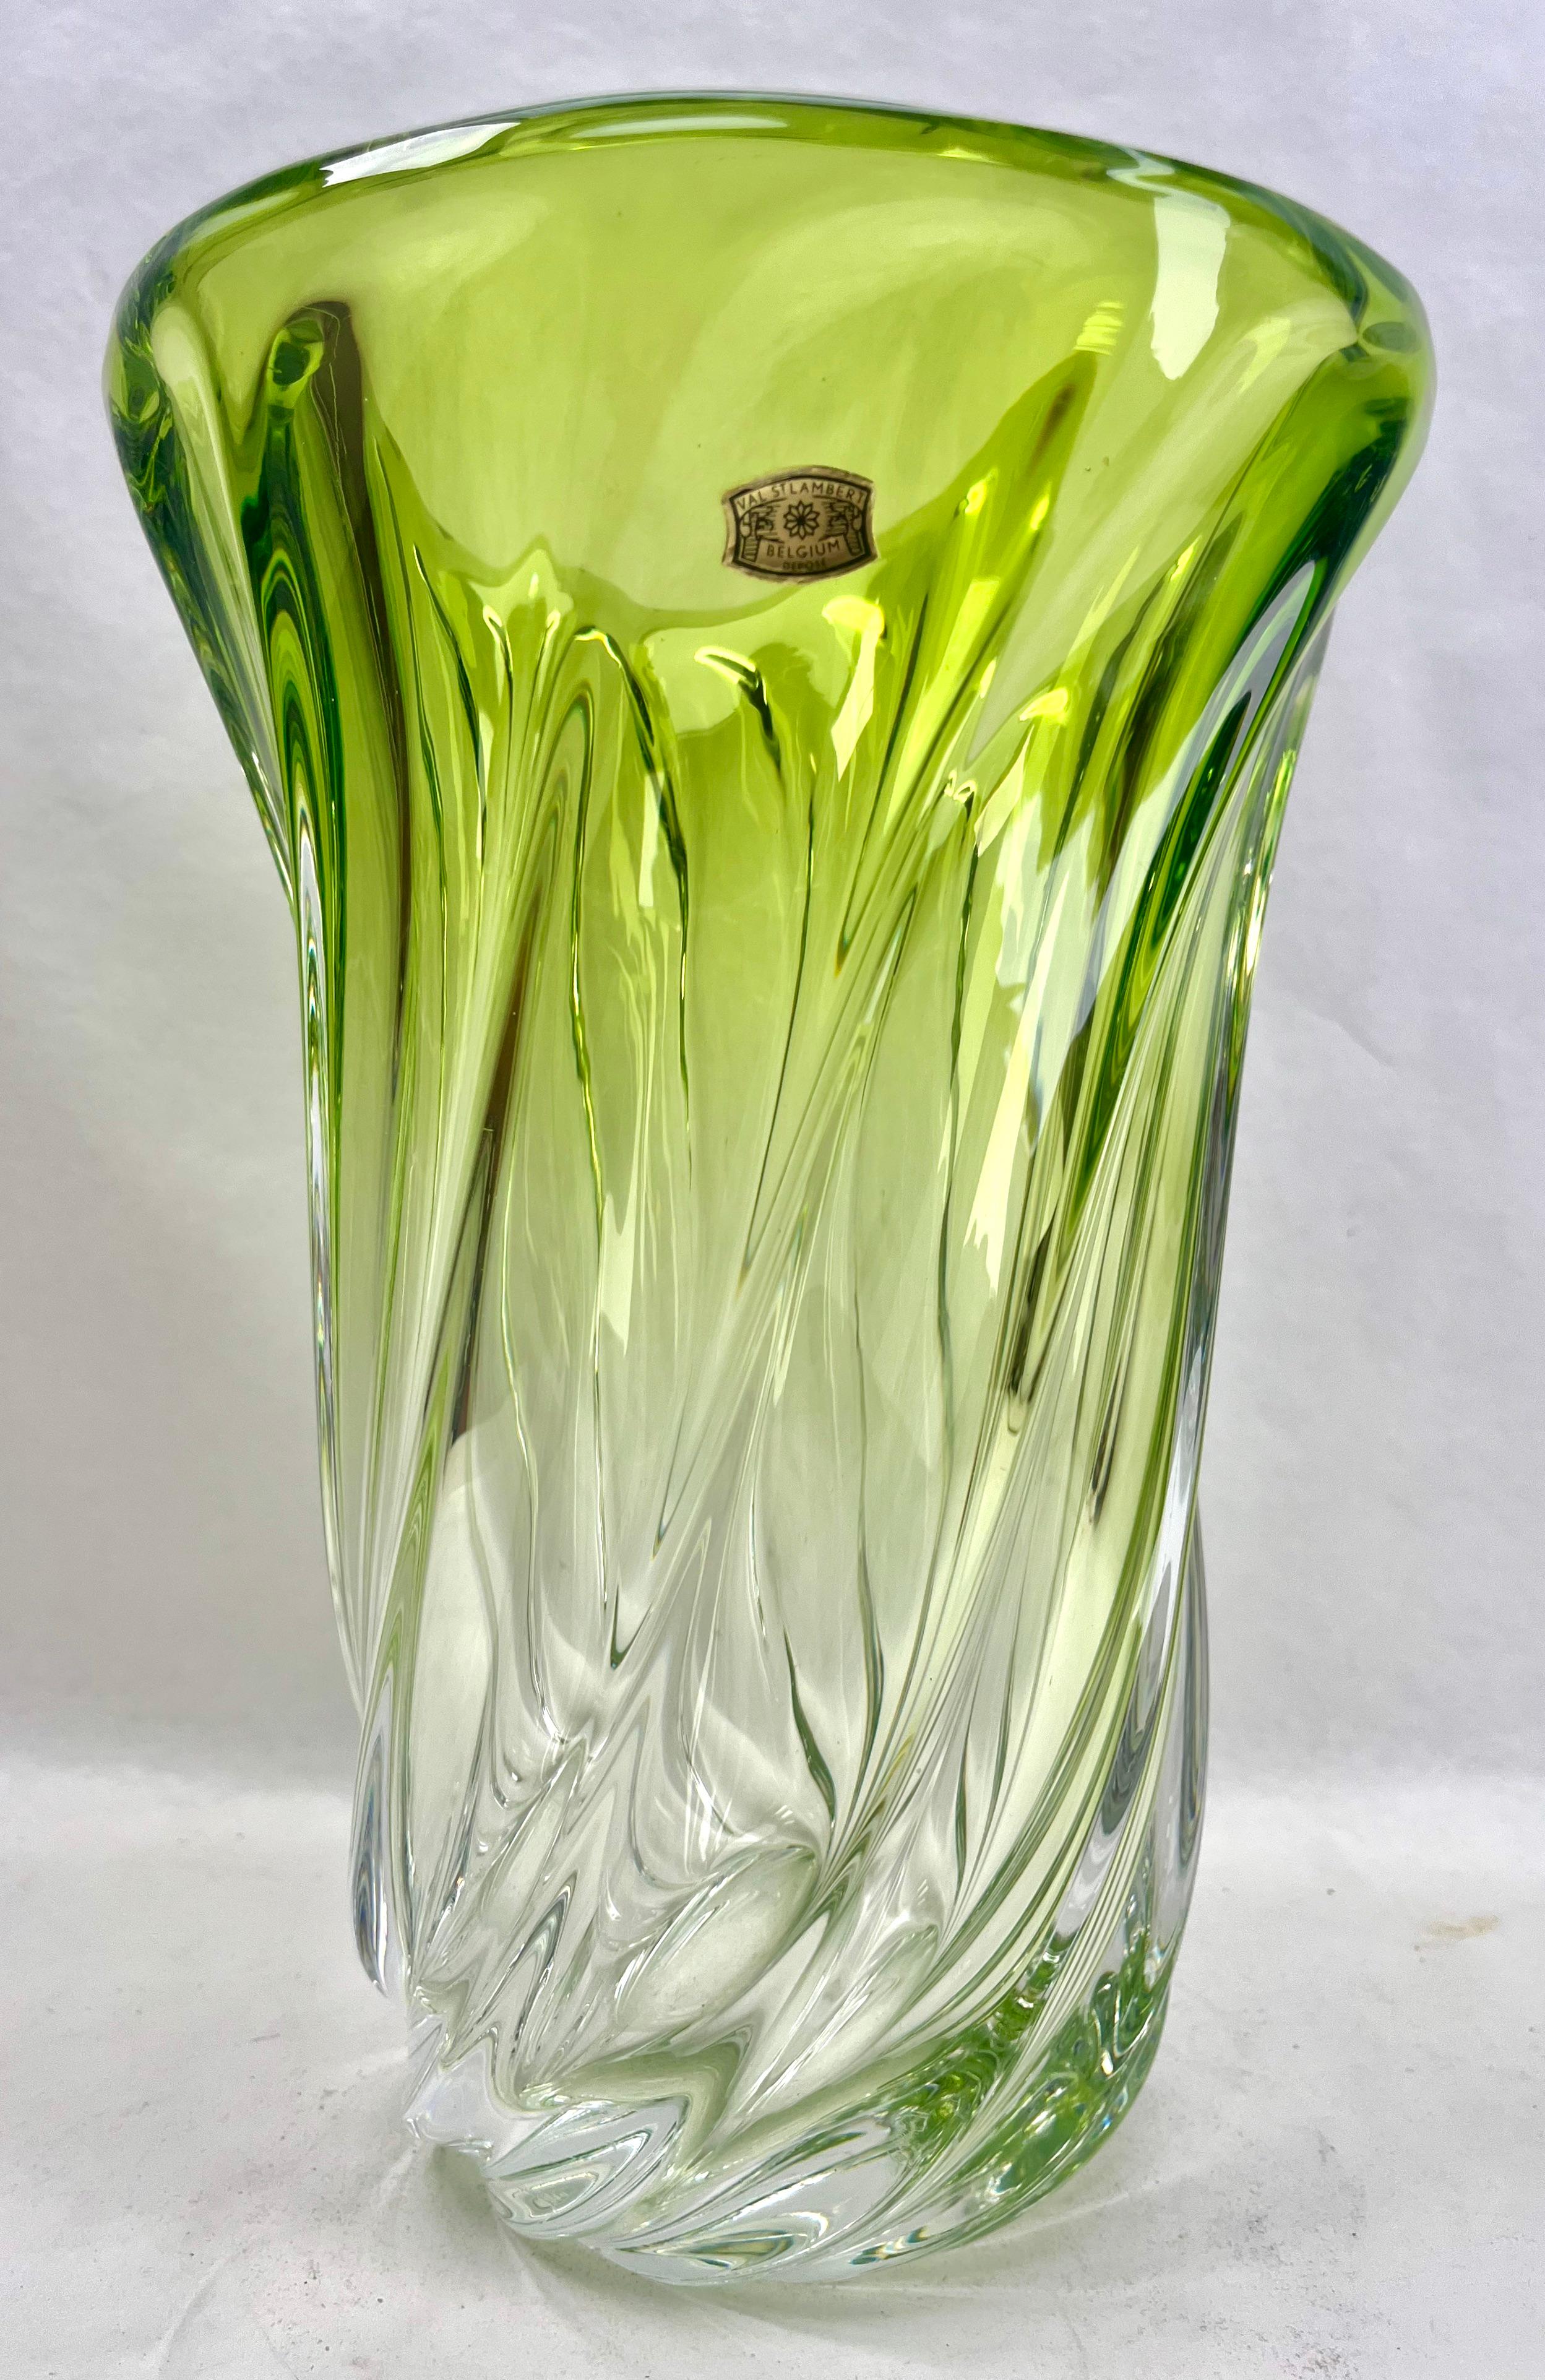 Val Saint Lambert, Label  Vase en cristal sculpté avec noyau vert, Belgique.

Lourd vase en cristal Val Saint Lambert catalogué dans les années 1950.
La couleur améthyste centrale (traditionnellement préférée de VSL) a été recouverte d'un Sommerso